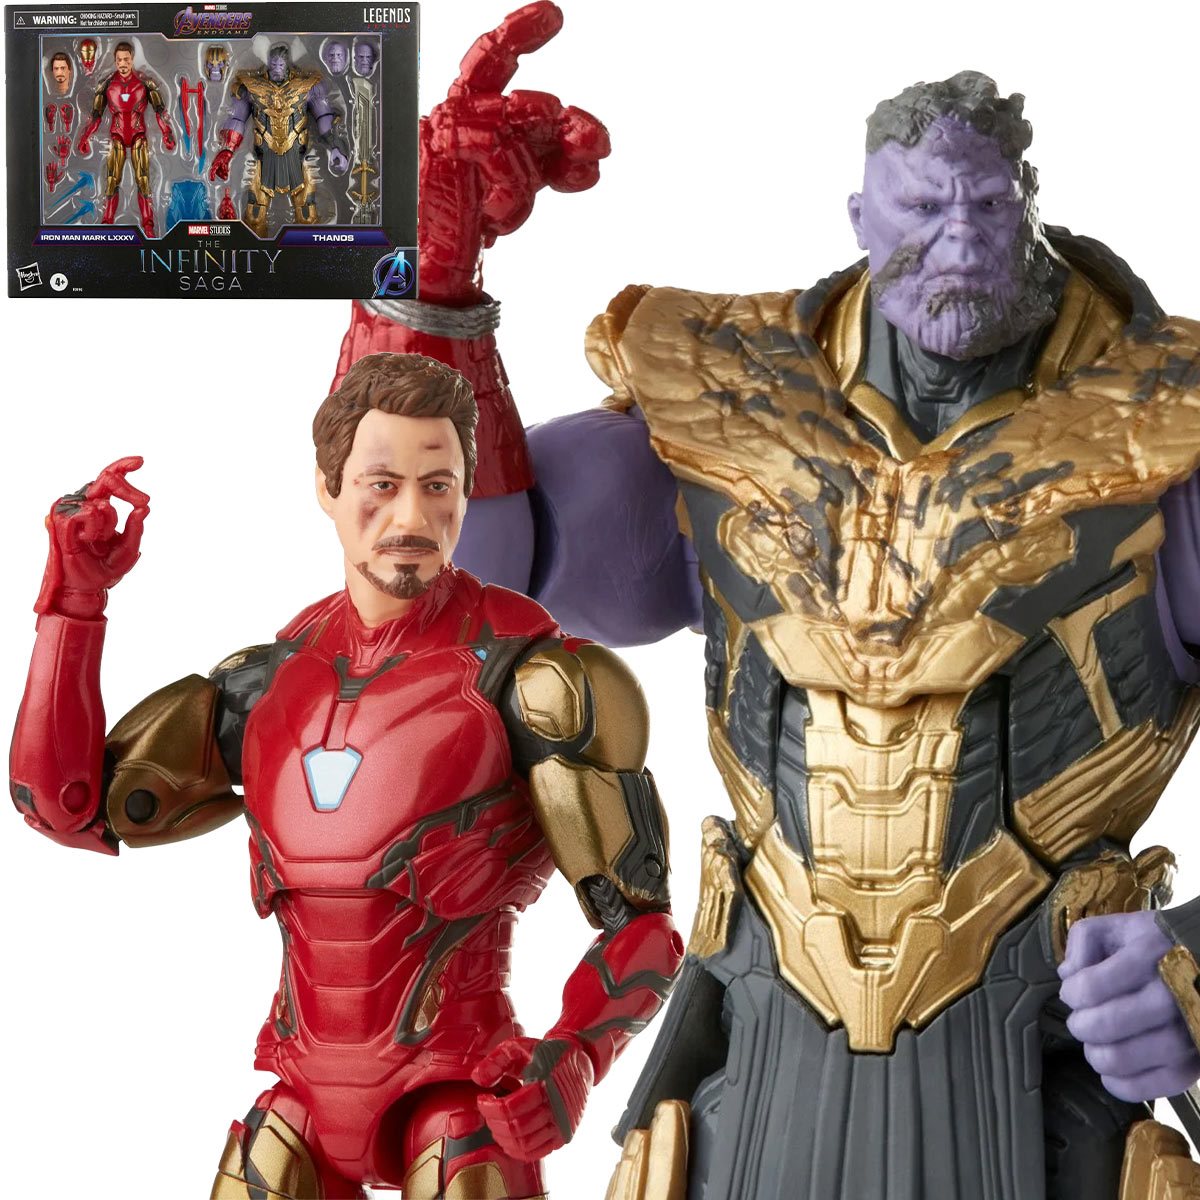 Avengers: Endgame Marvel Legends The Infinity Saga Iron Man Mark 85 & Thanos Two-Pack